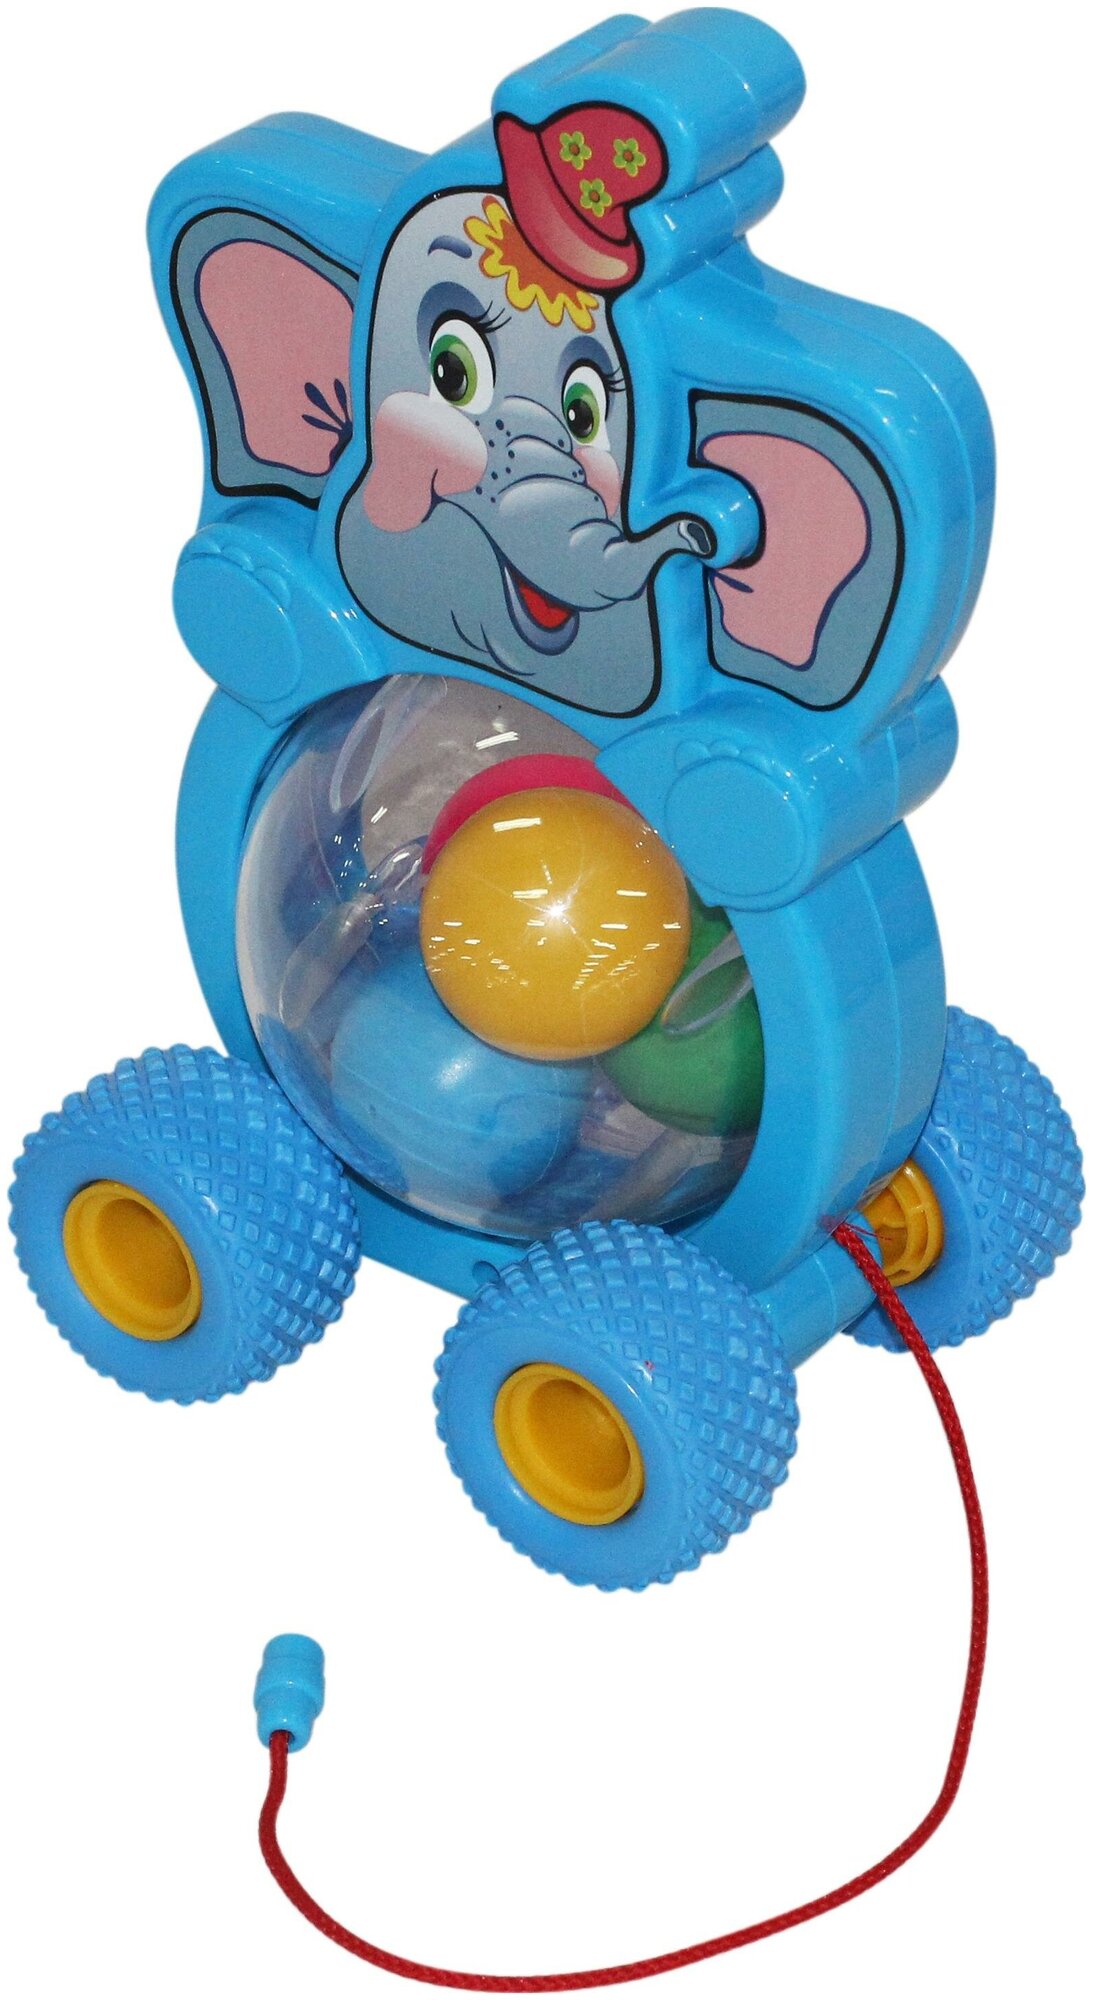 Каталка-игрушка Полесье Бимбосфера Слонёнок, 54432, мультиколор